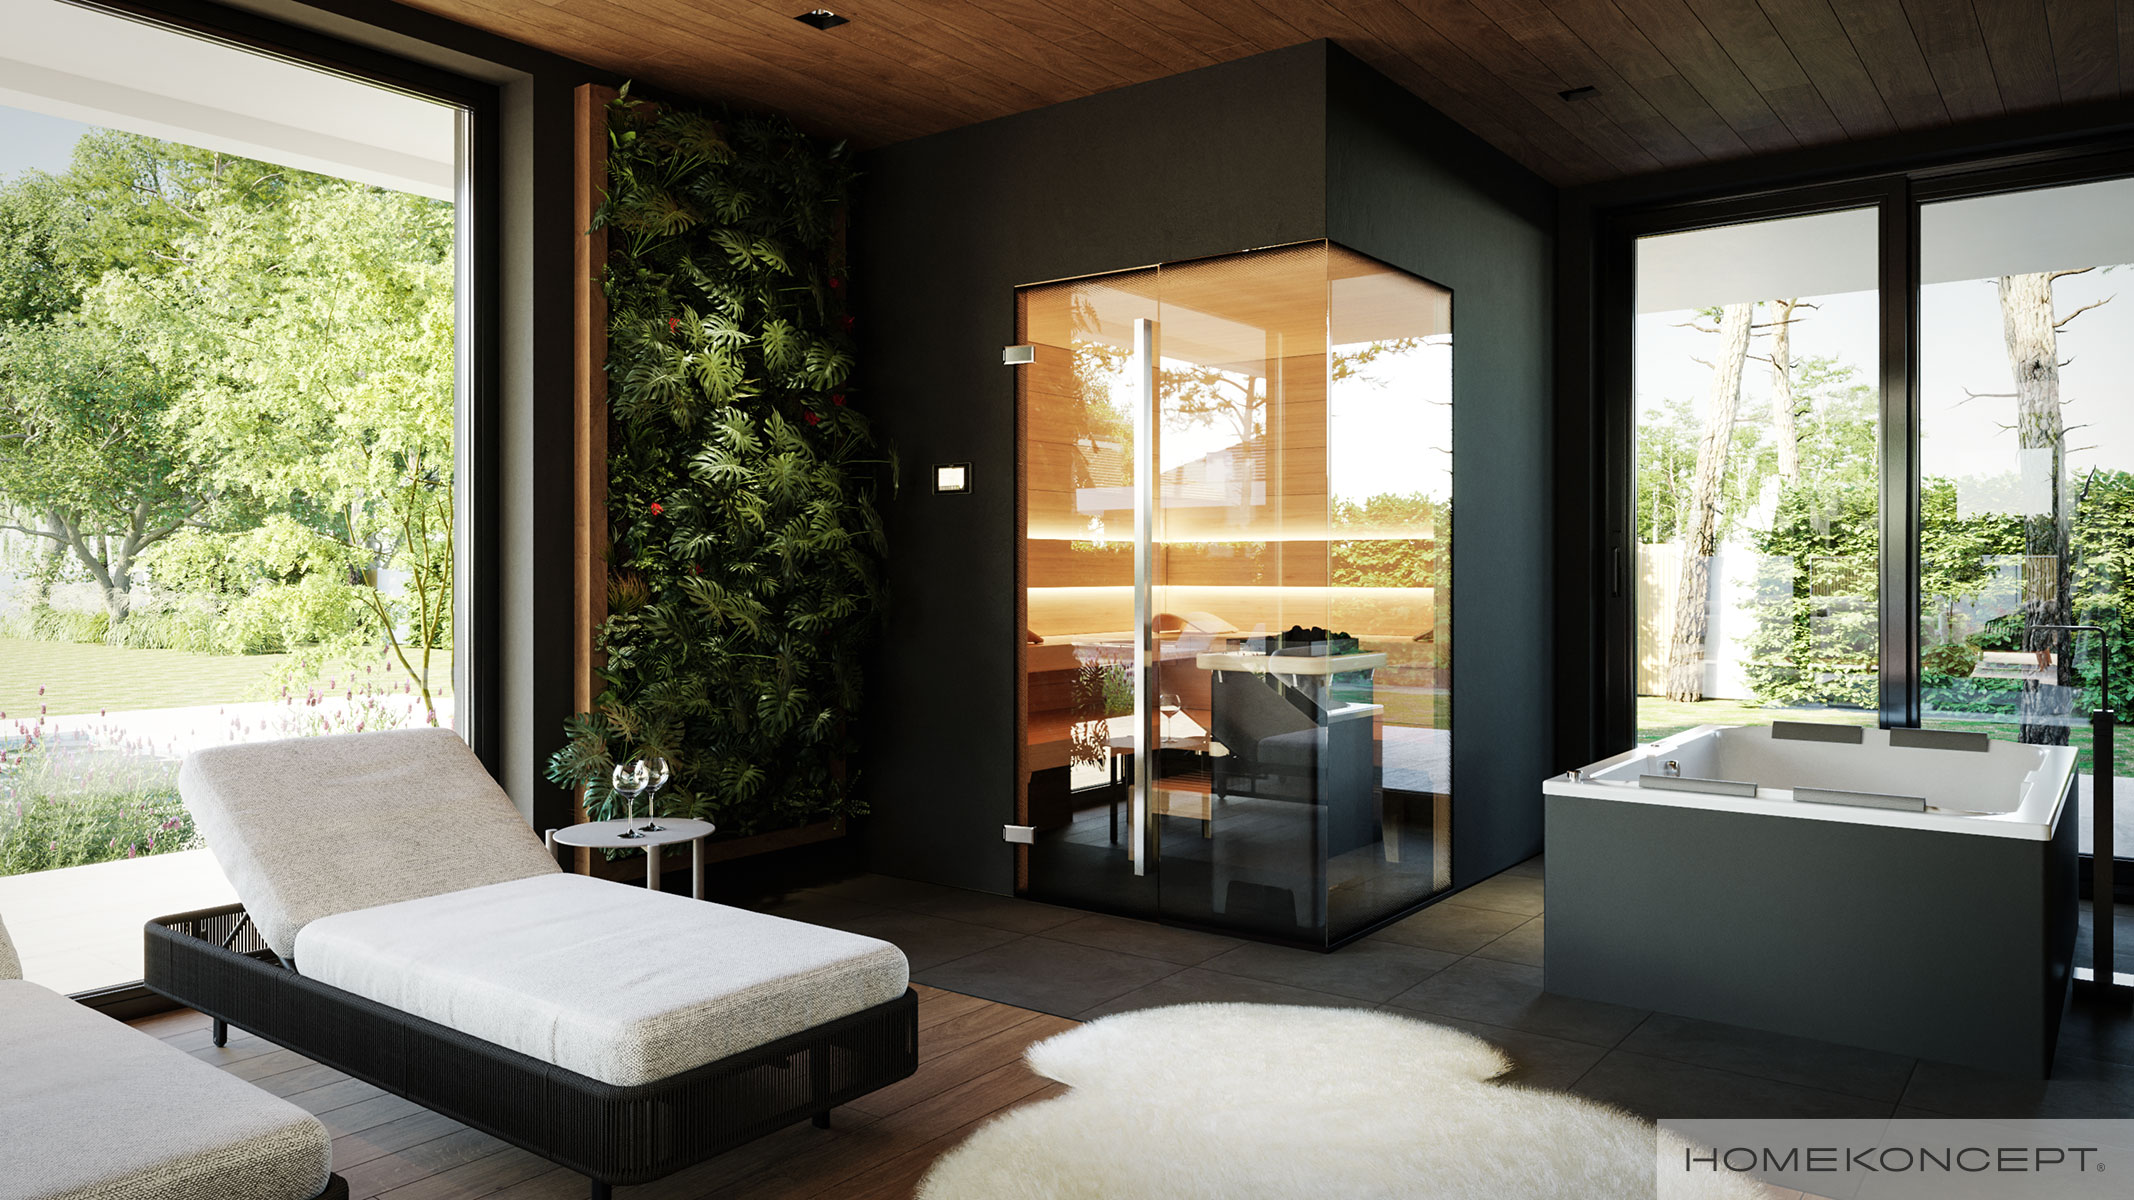 Prywatna sauna w Twoim domu – gotowy projekt willi HOMEKONCEPT 74